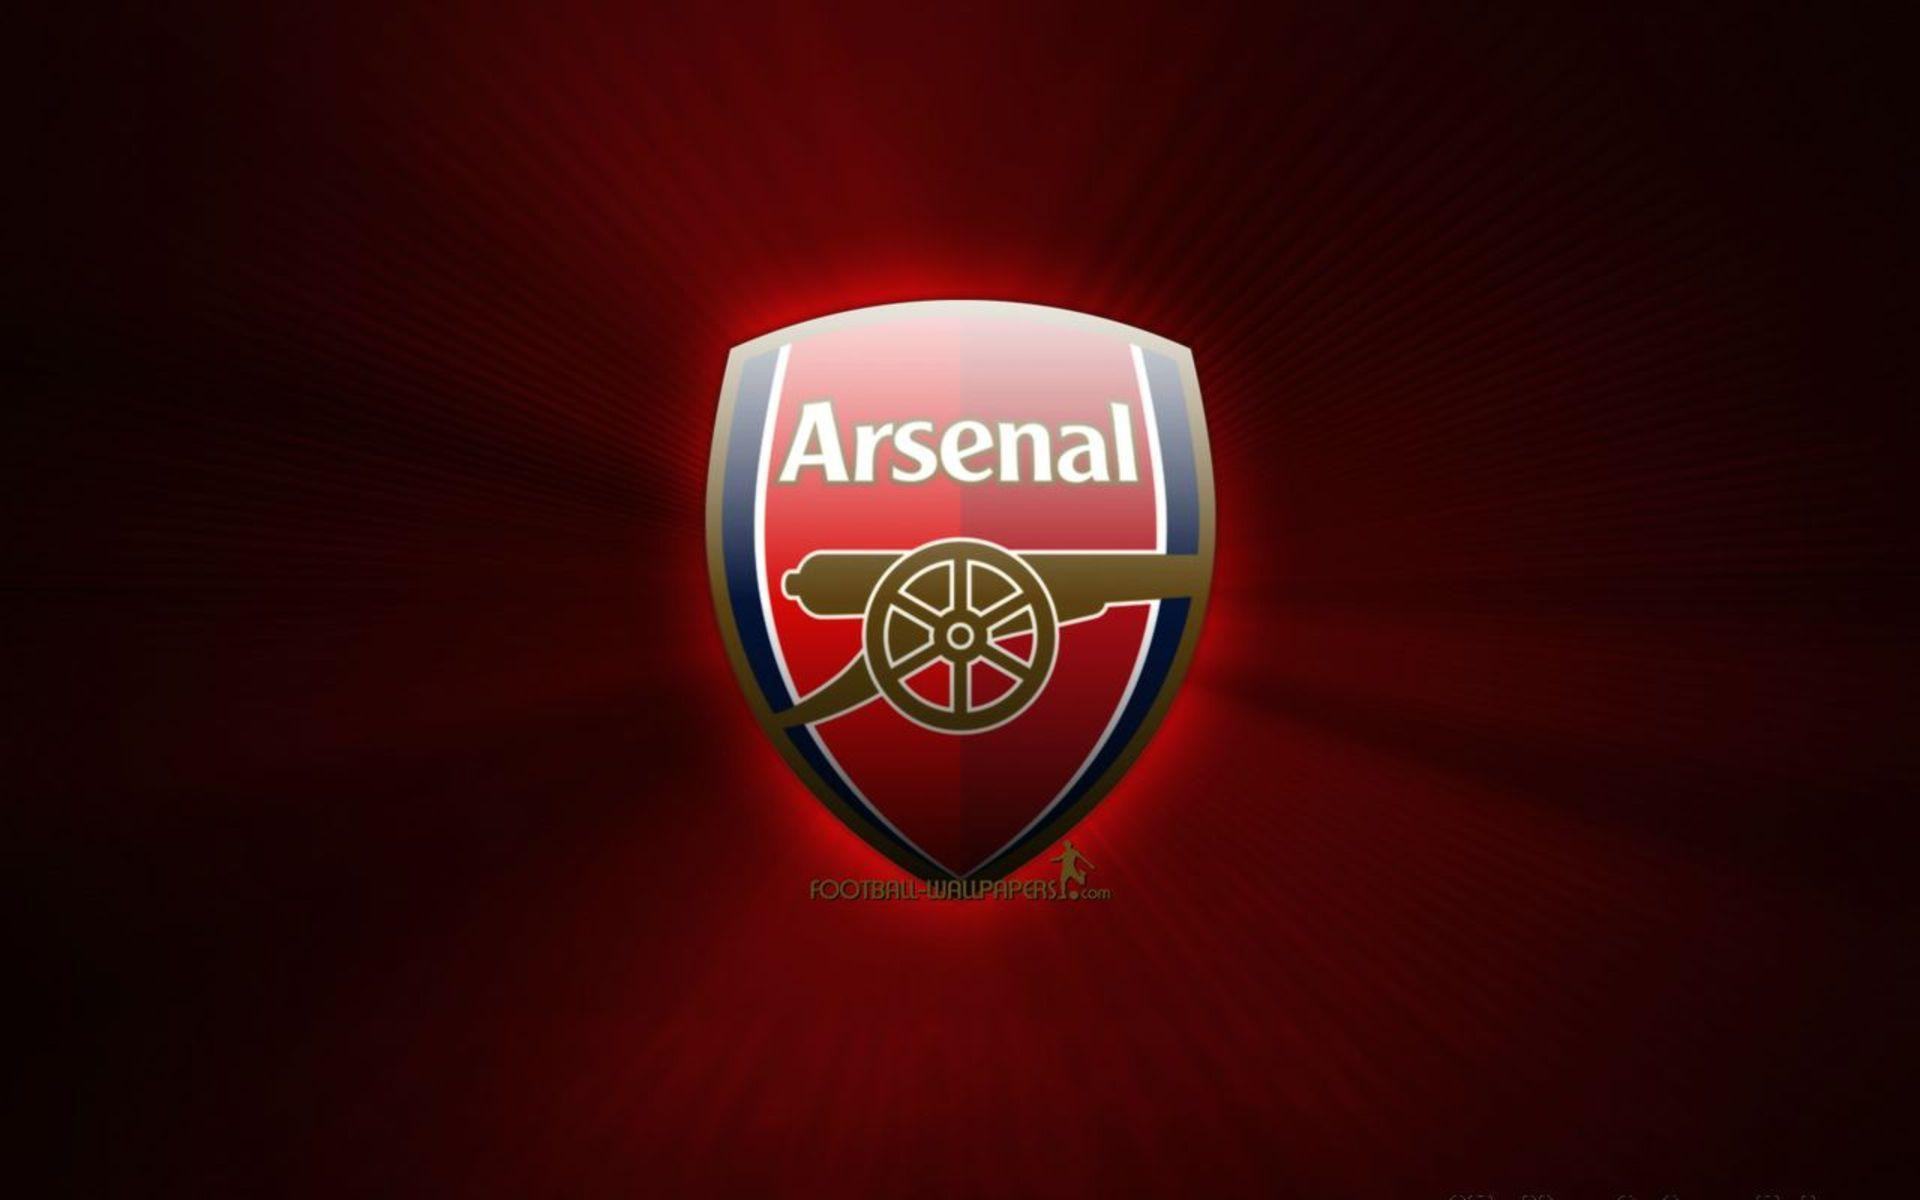 Bộ Sưu Tập Hình Nền Điện Thoại Logo Arsenal - Trường Thpt Trần Hưng Đạo